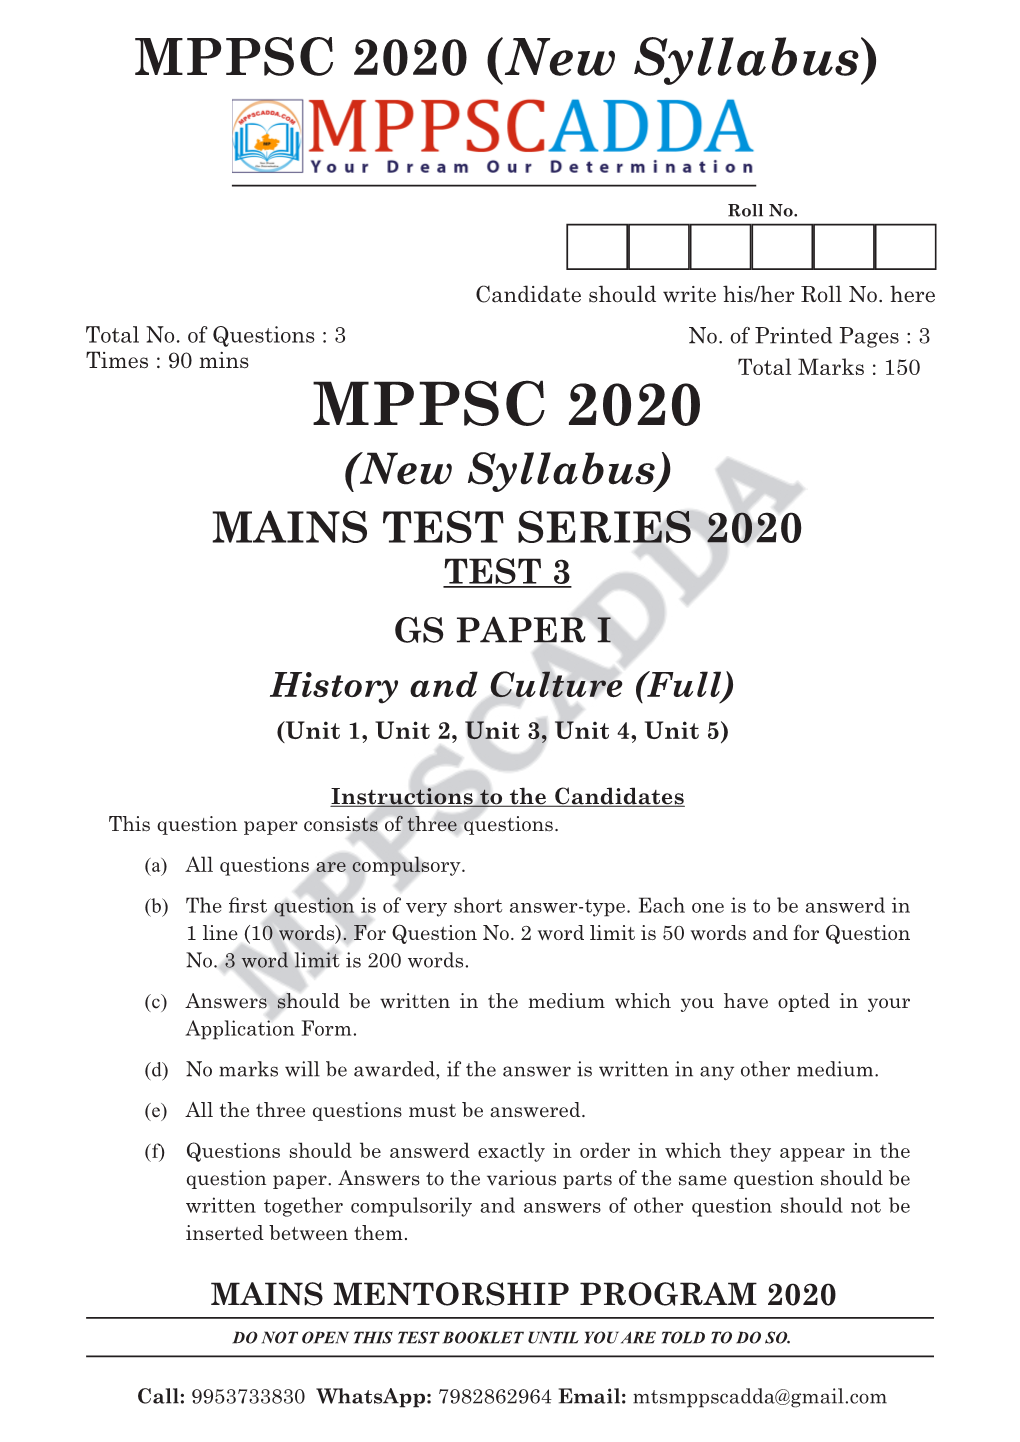 MPPSC 2020 (New Syllabus)